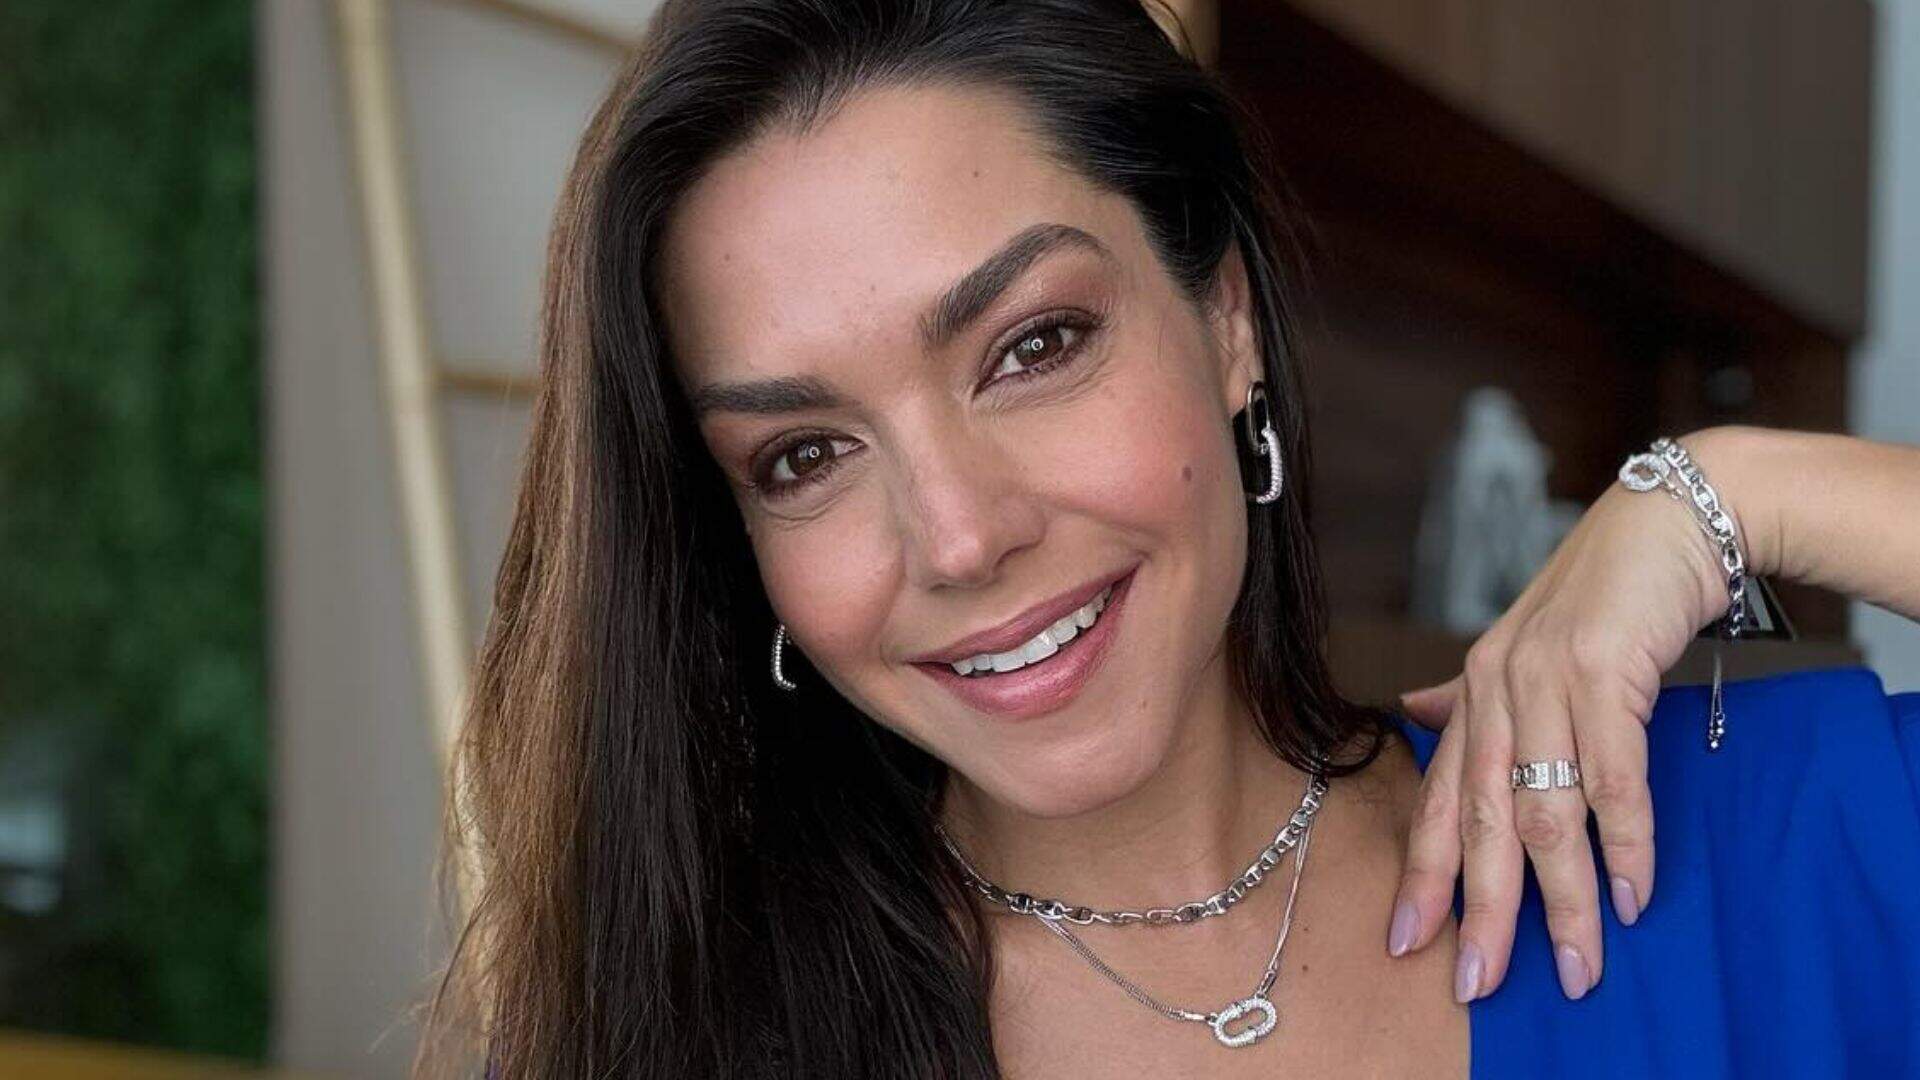 Thaís Fersoza é uma atriz brasileira reconhecida por sua atuação na TV e no teatro. Começou como atriz mirim e se destacou em novelas e séries. É influente nas redes sociais, compartilhando sua vida pessoal e profissional. Casada com o cantor Michel Teló, tem dois filhos.